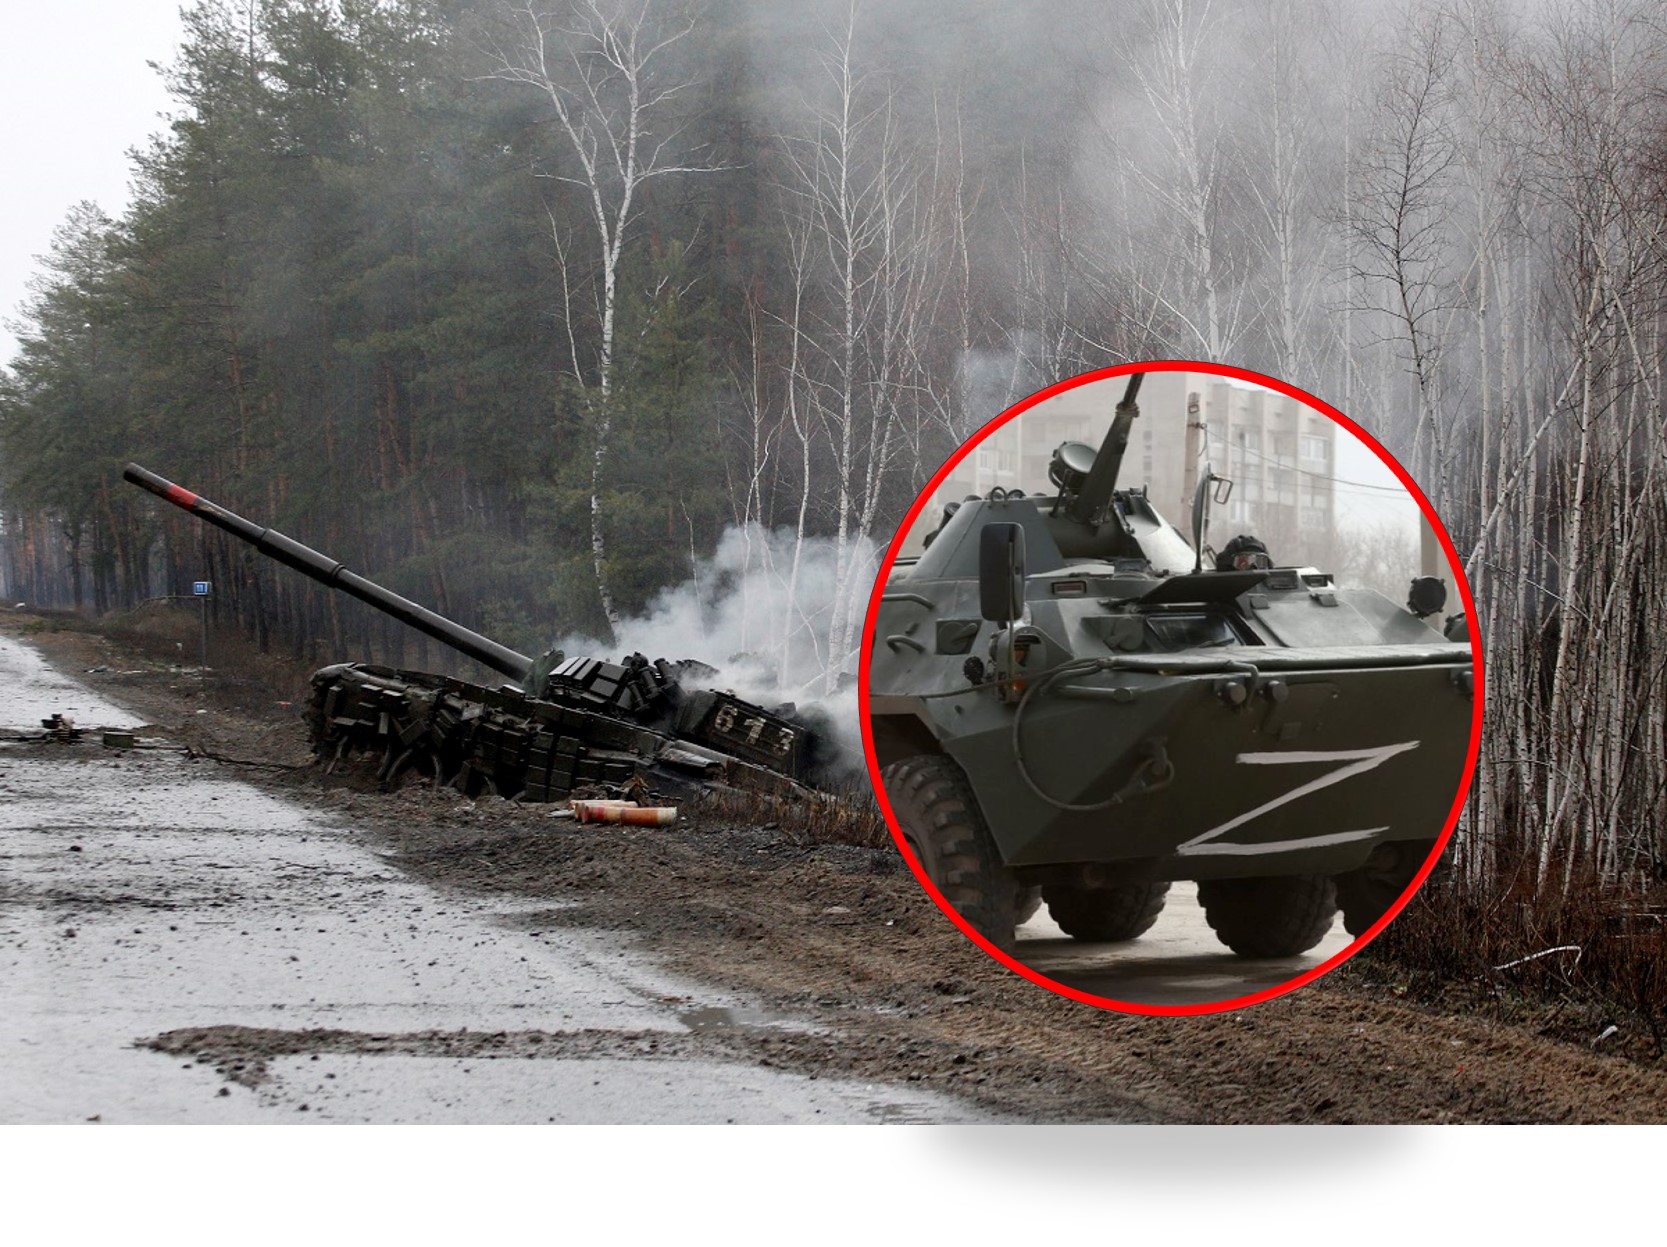 Qué significa la 'Z' de los uniformes y tanques rusos?